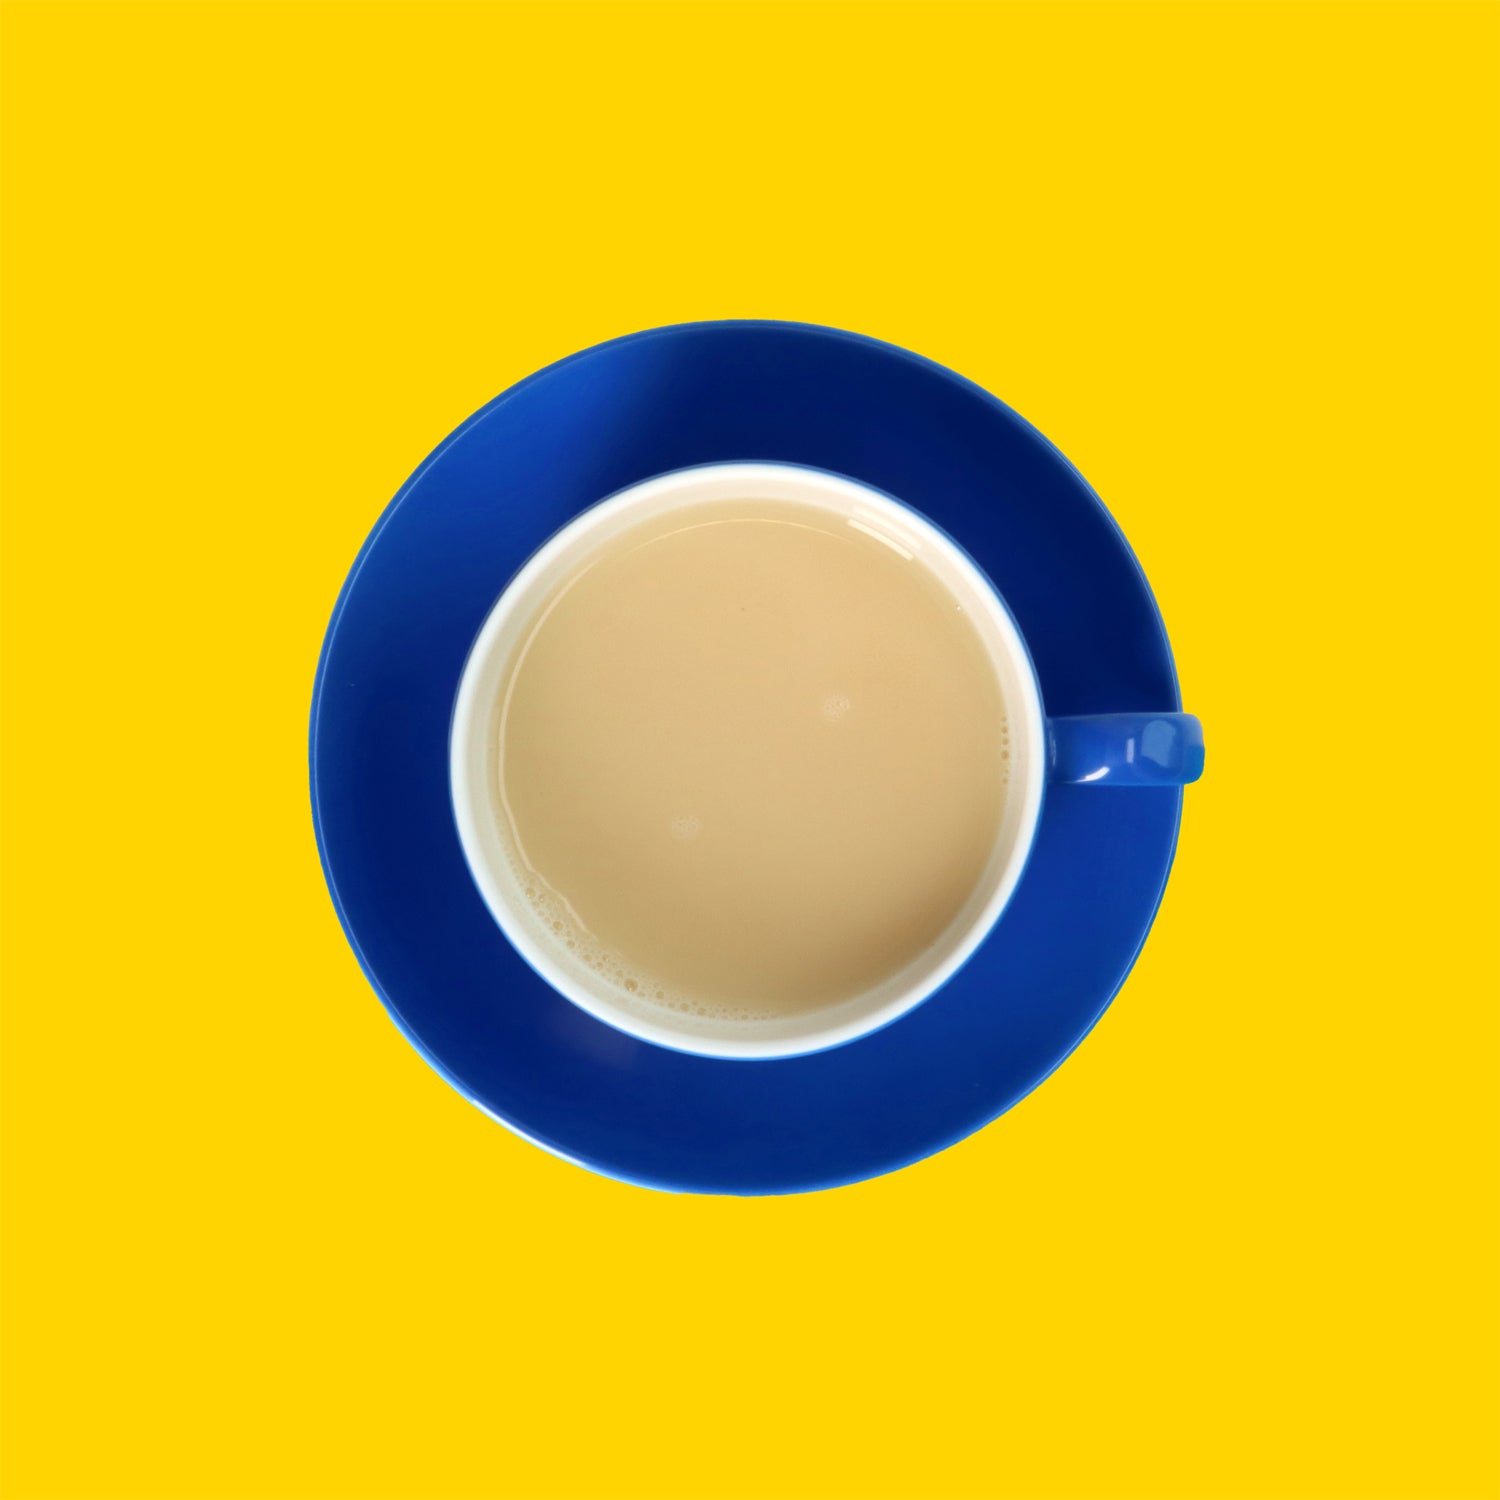 Drinkmich Glutenfreies hafermilchpulver zum Selbermixen Seviervorsschlag in dunkelblauer Porzellantasse vor gelbem Hintergrund